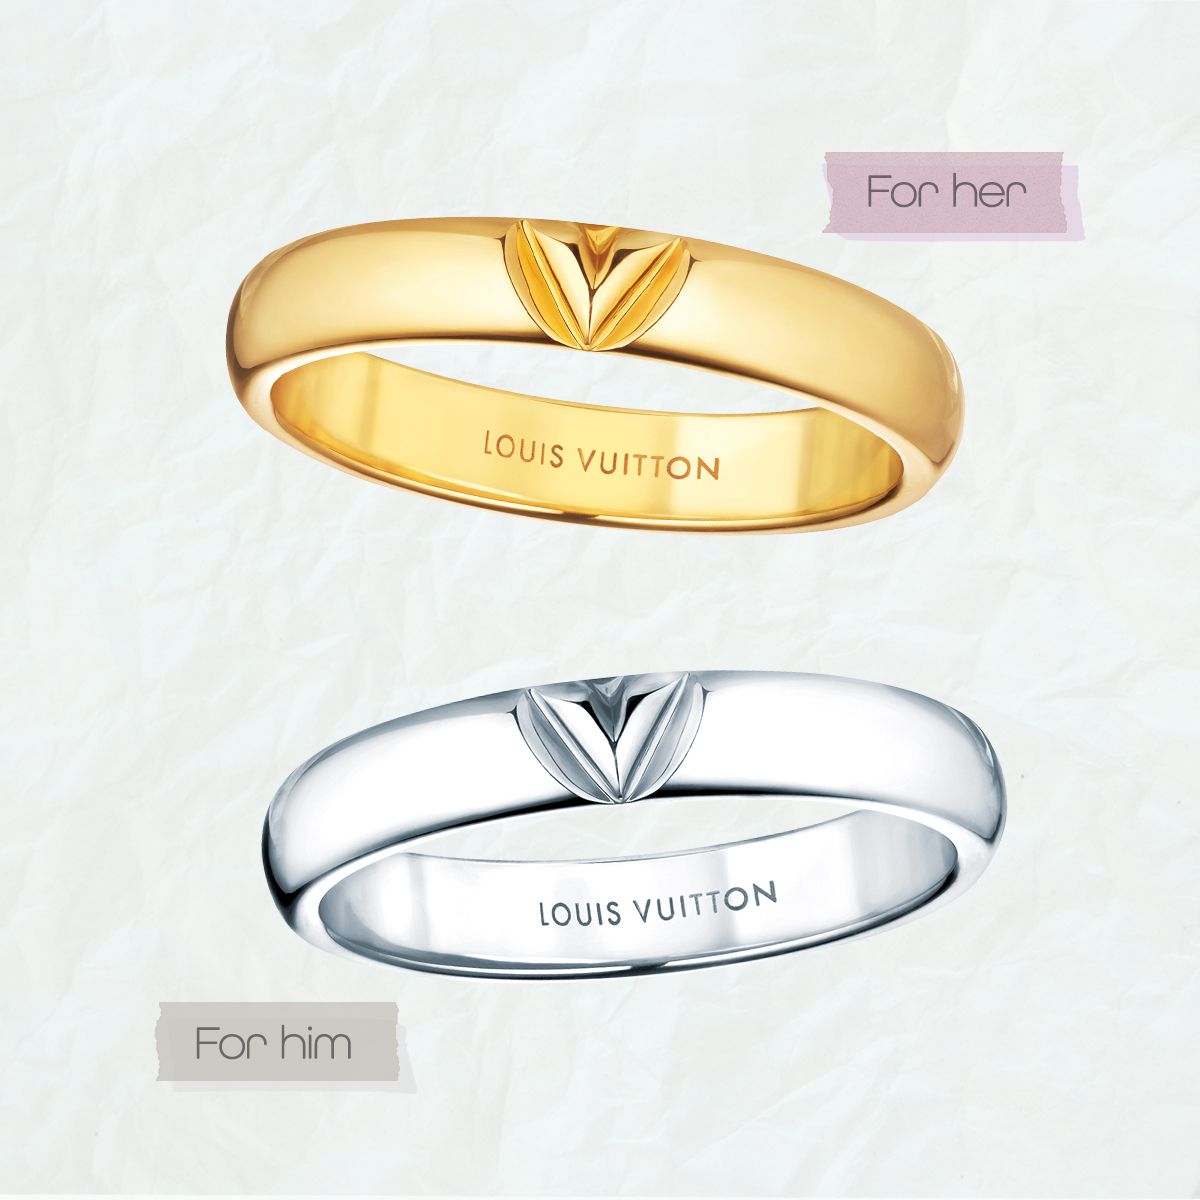 人気ブランドのカップルジュエリー ユニークデザインの結婚指輪 ペアリング6選